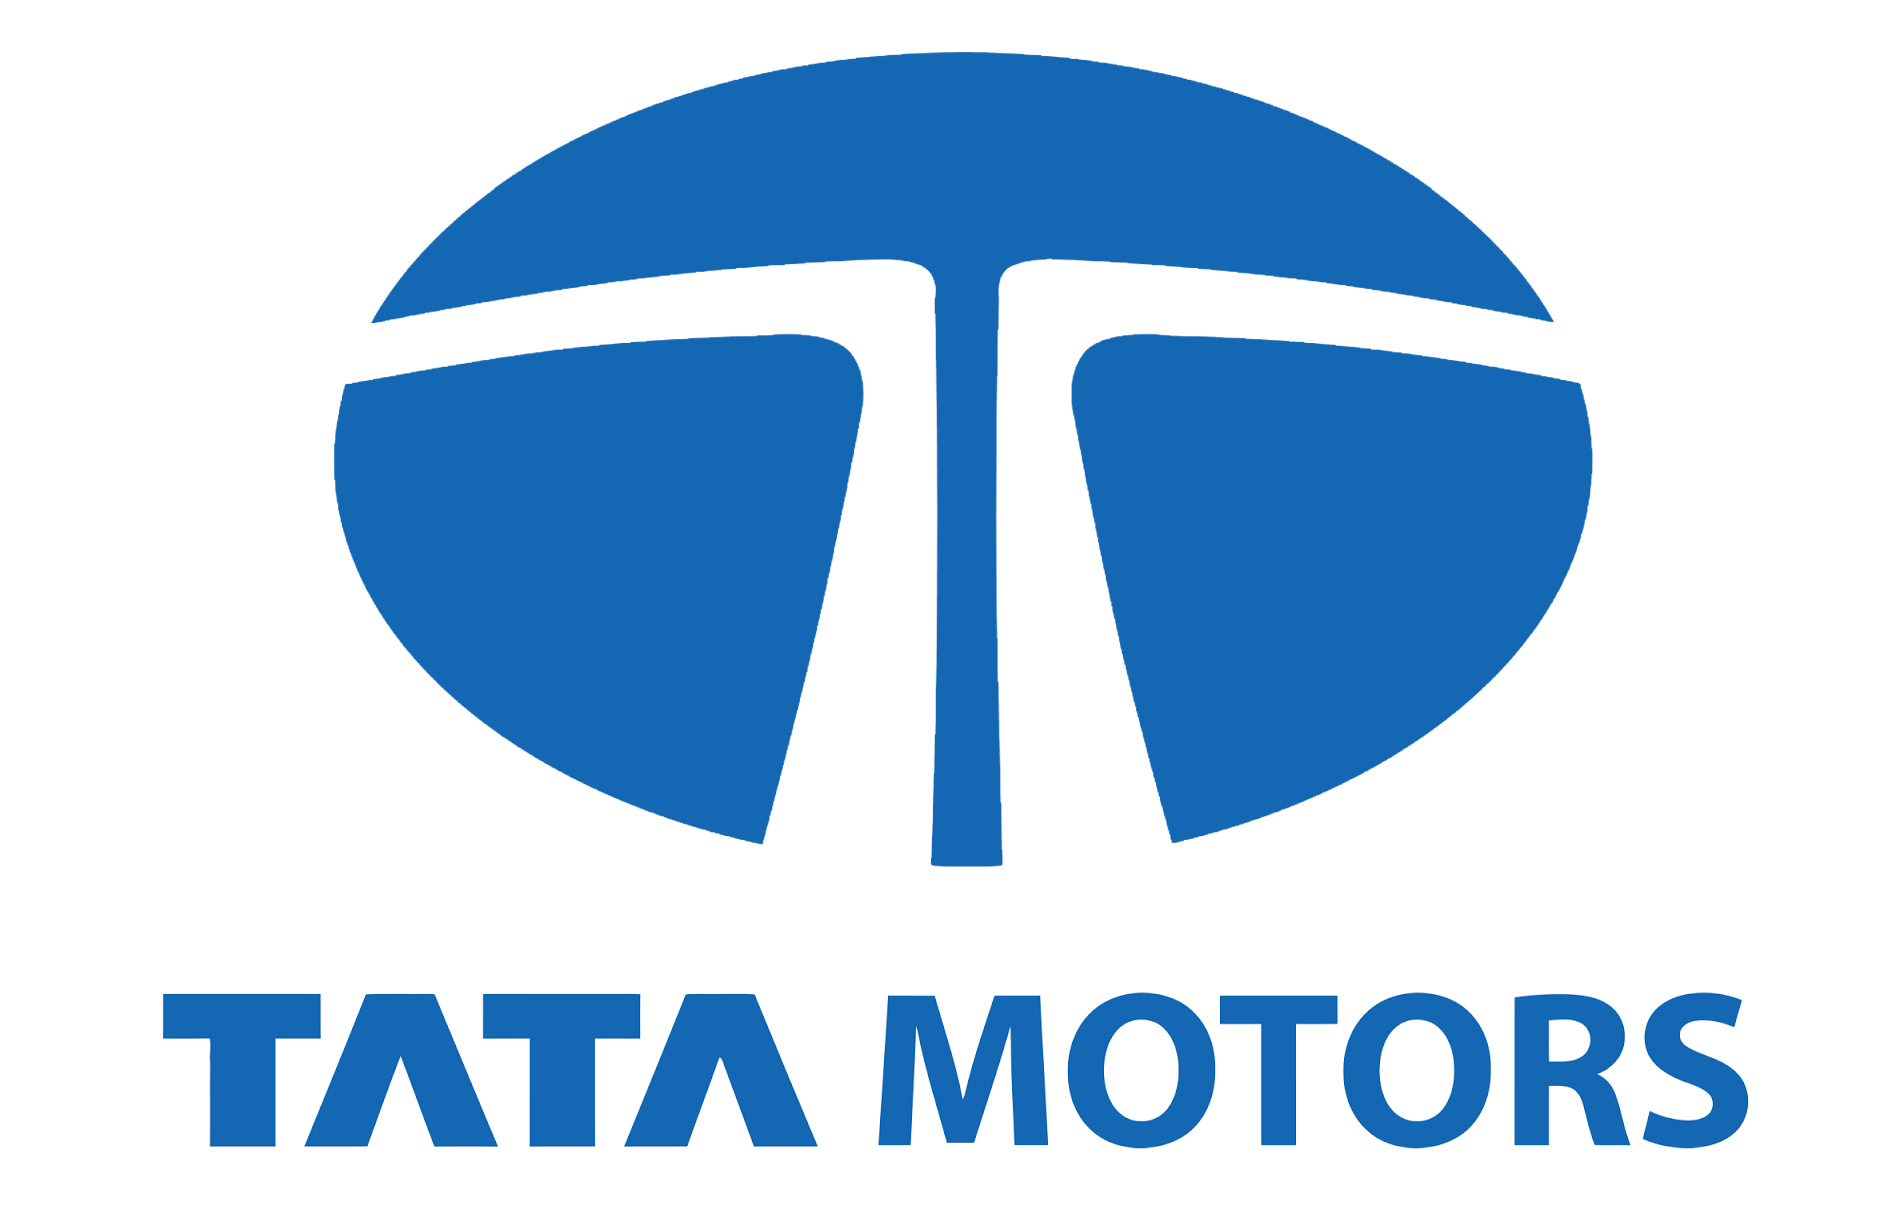 Tata Motors Cars Showroom - DPS Motors|Service Center|Automotive